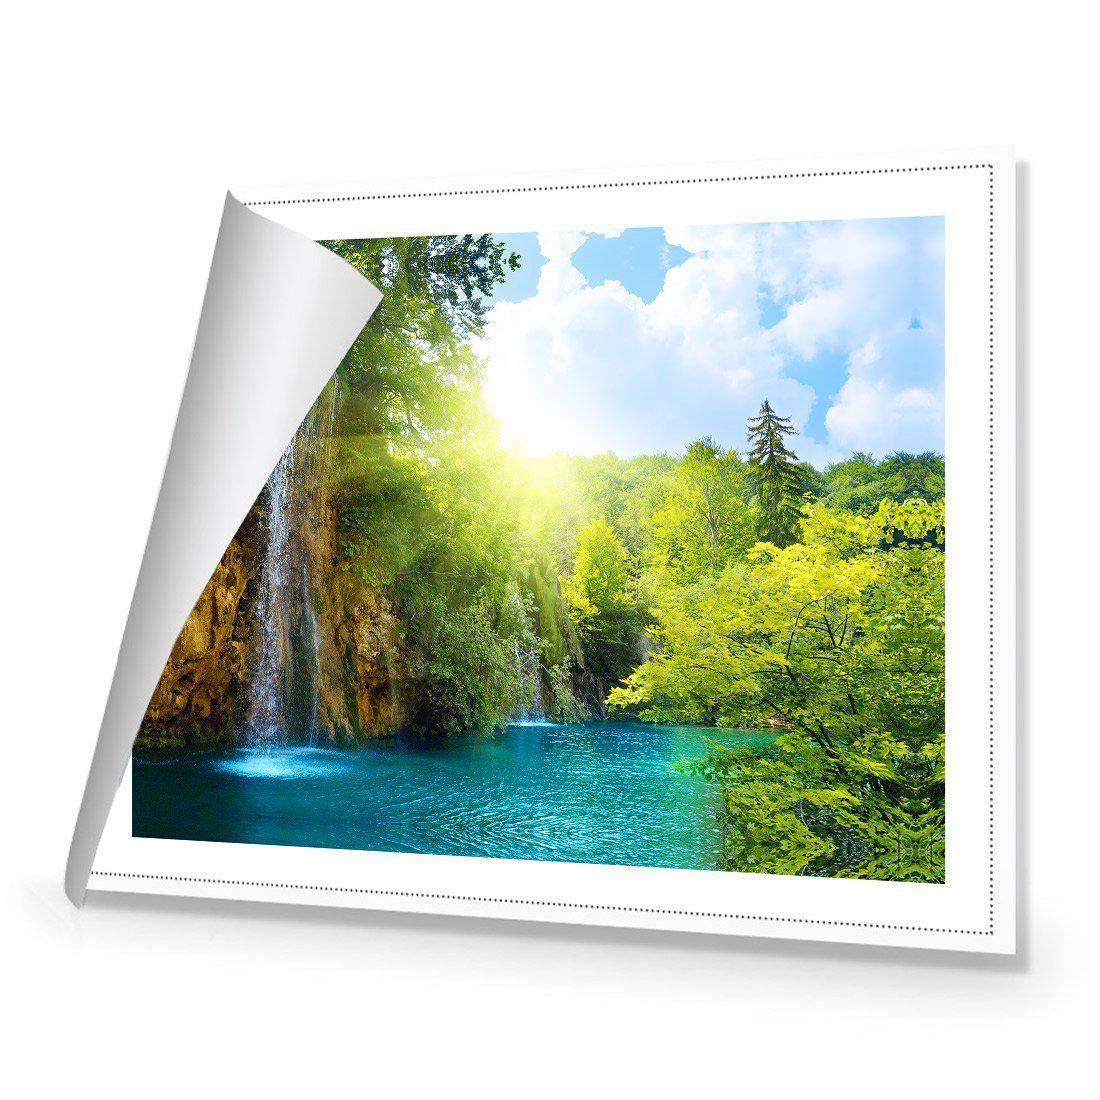 Summer Waterfall Canvas Art-Canvas-Wall Art Designs-45x30cm-Rolled Canvas-Wall Art Designs